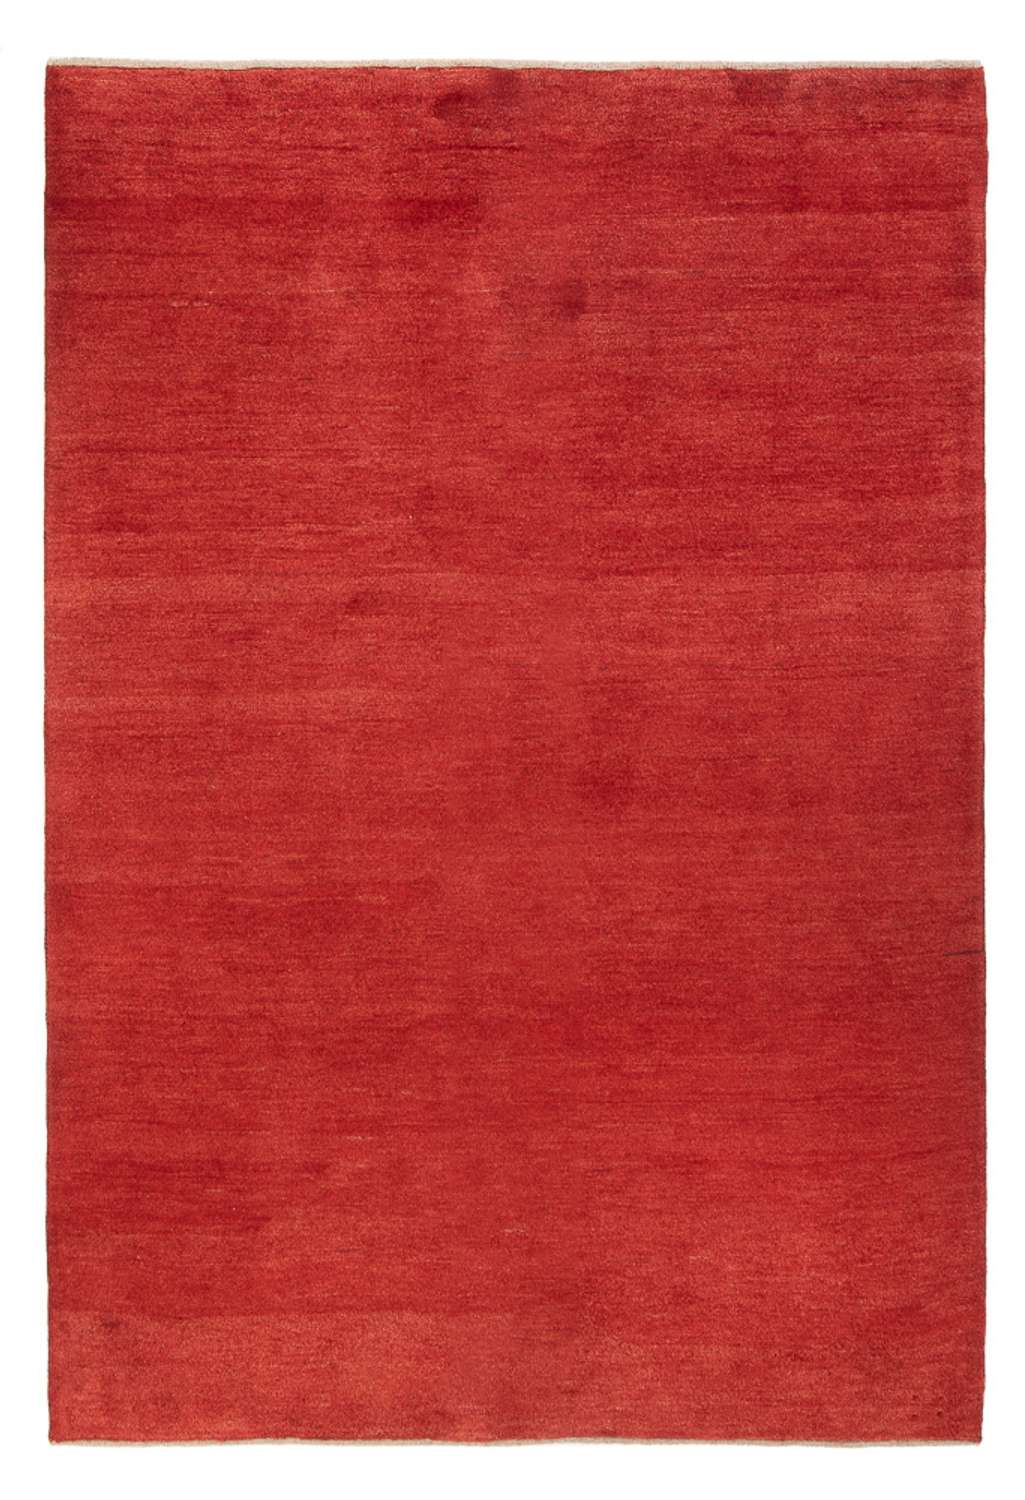 Tappeto Gabbeh - Persero - 228 x 161 cm - rosso